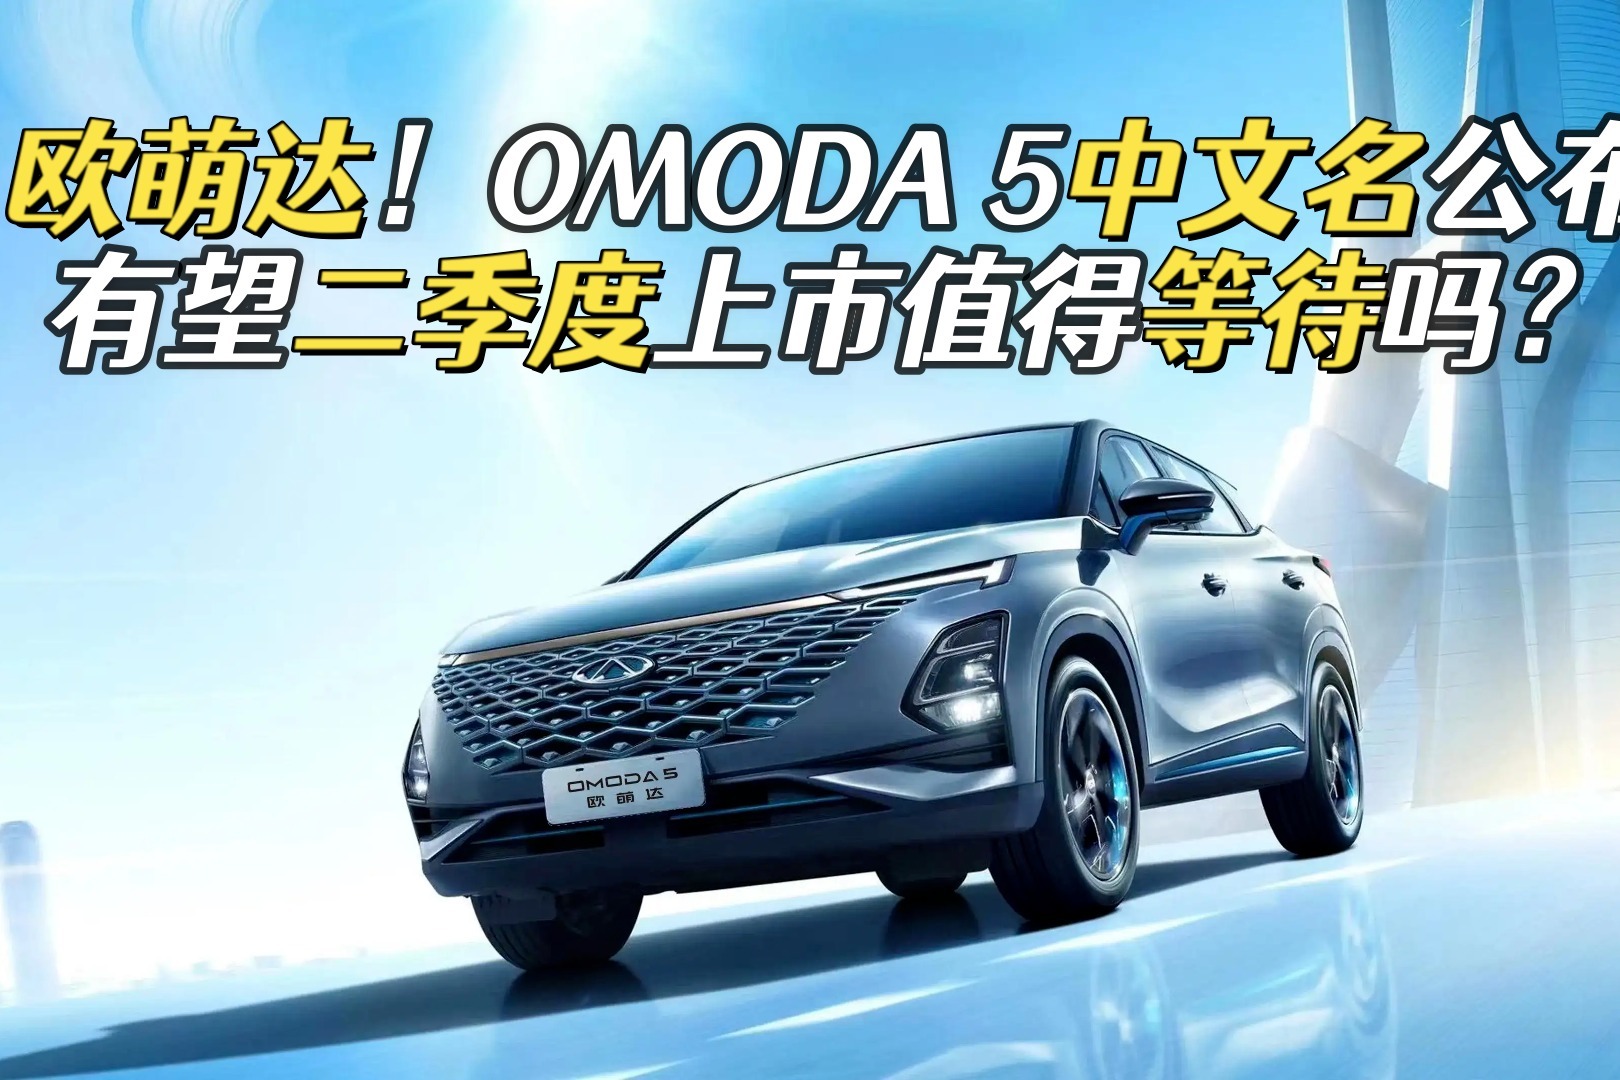 中文定名欧萌达 奇瑞OMODA 5于月底开启预售 - 国内 - 汽车信息网